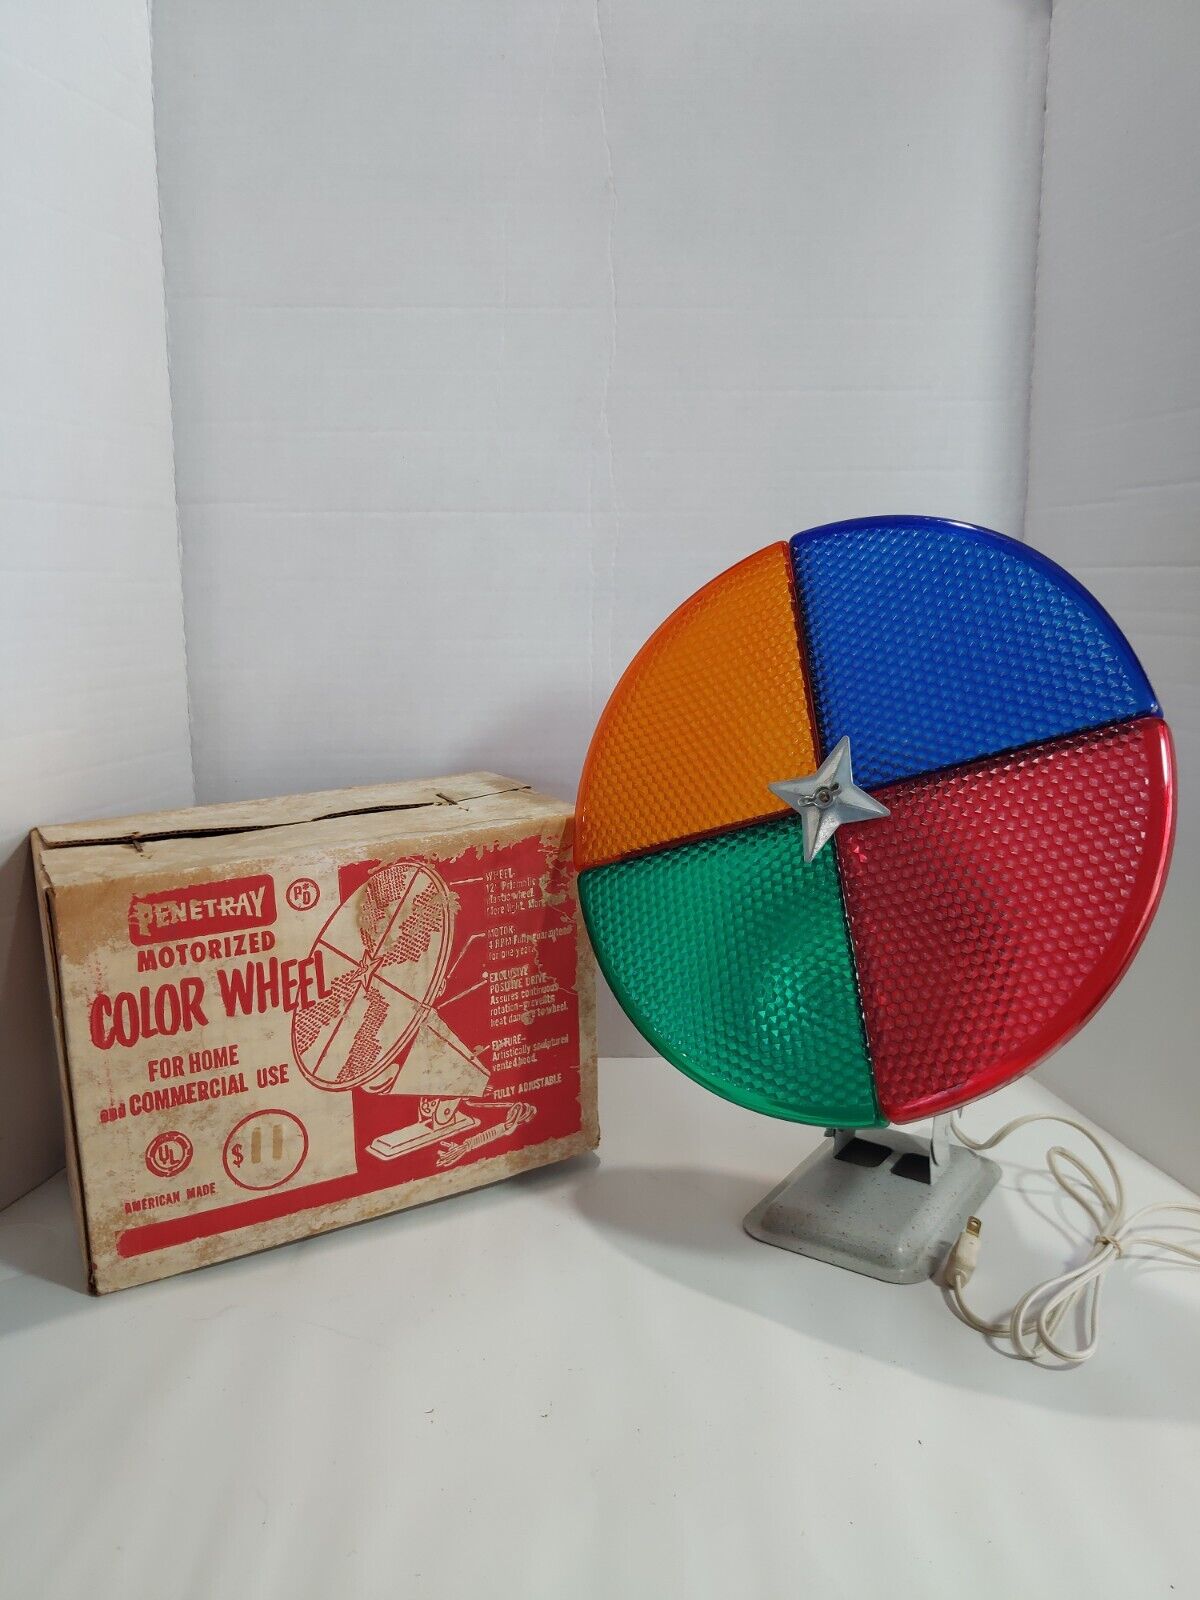 Vintage Penetray Color Wheel